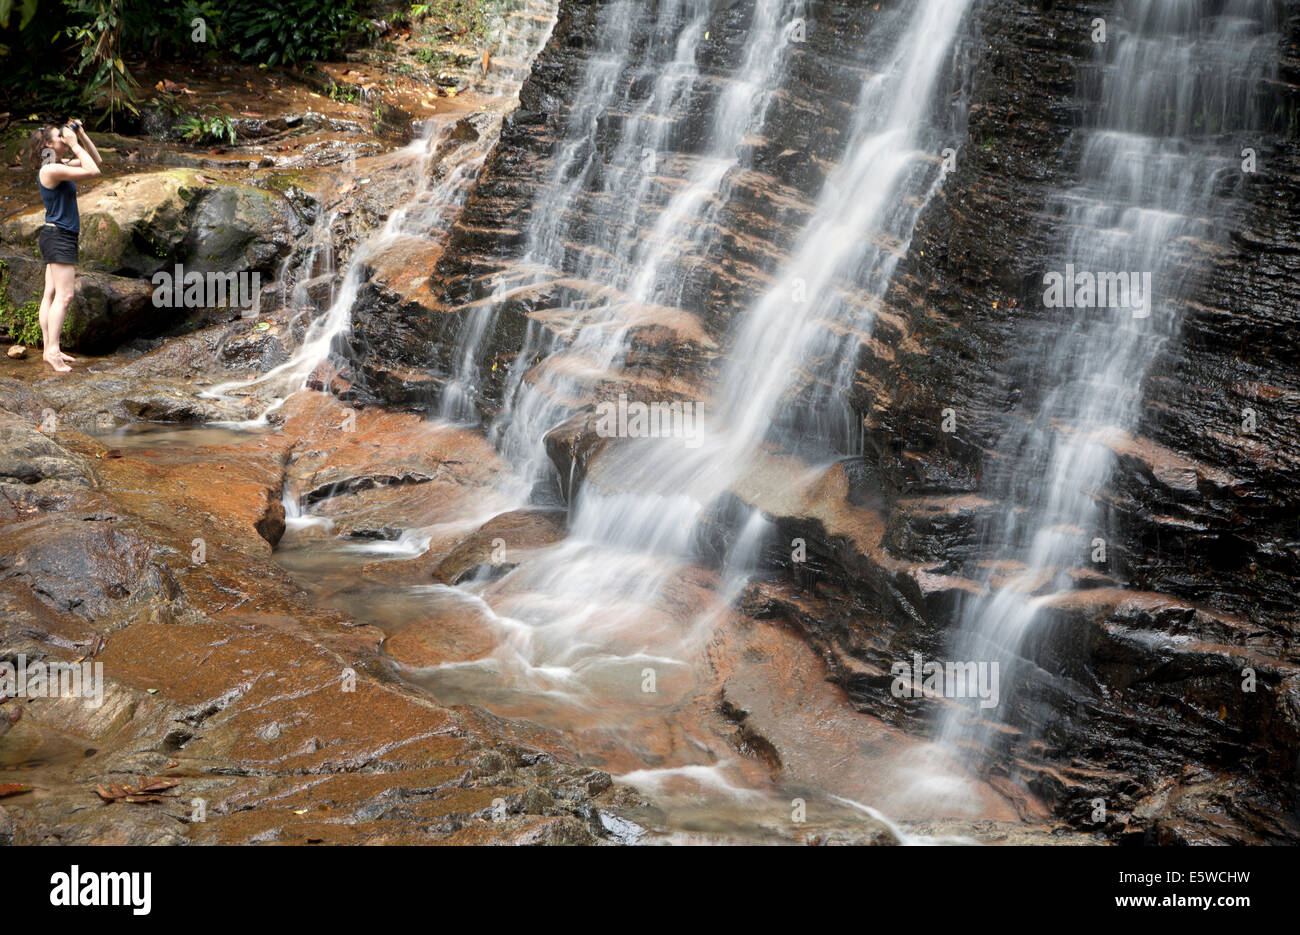 Ragazza prendendo foto della cascata nella foresta pluviale tropicale regione del Borneo. fotografie con lunghi tempi di esposizione effetto crea lisce come la seta cascate con donna Foto Stock